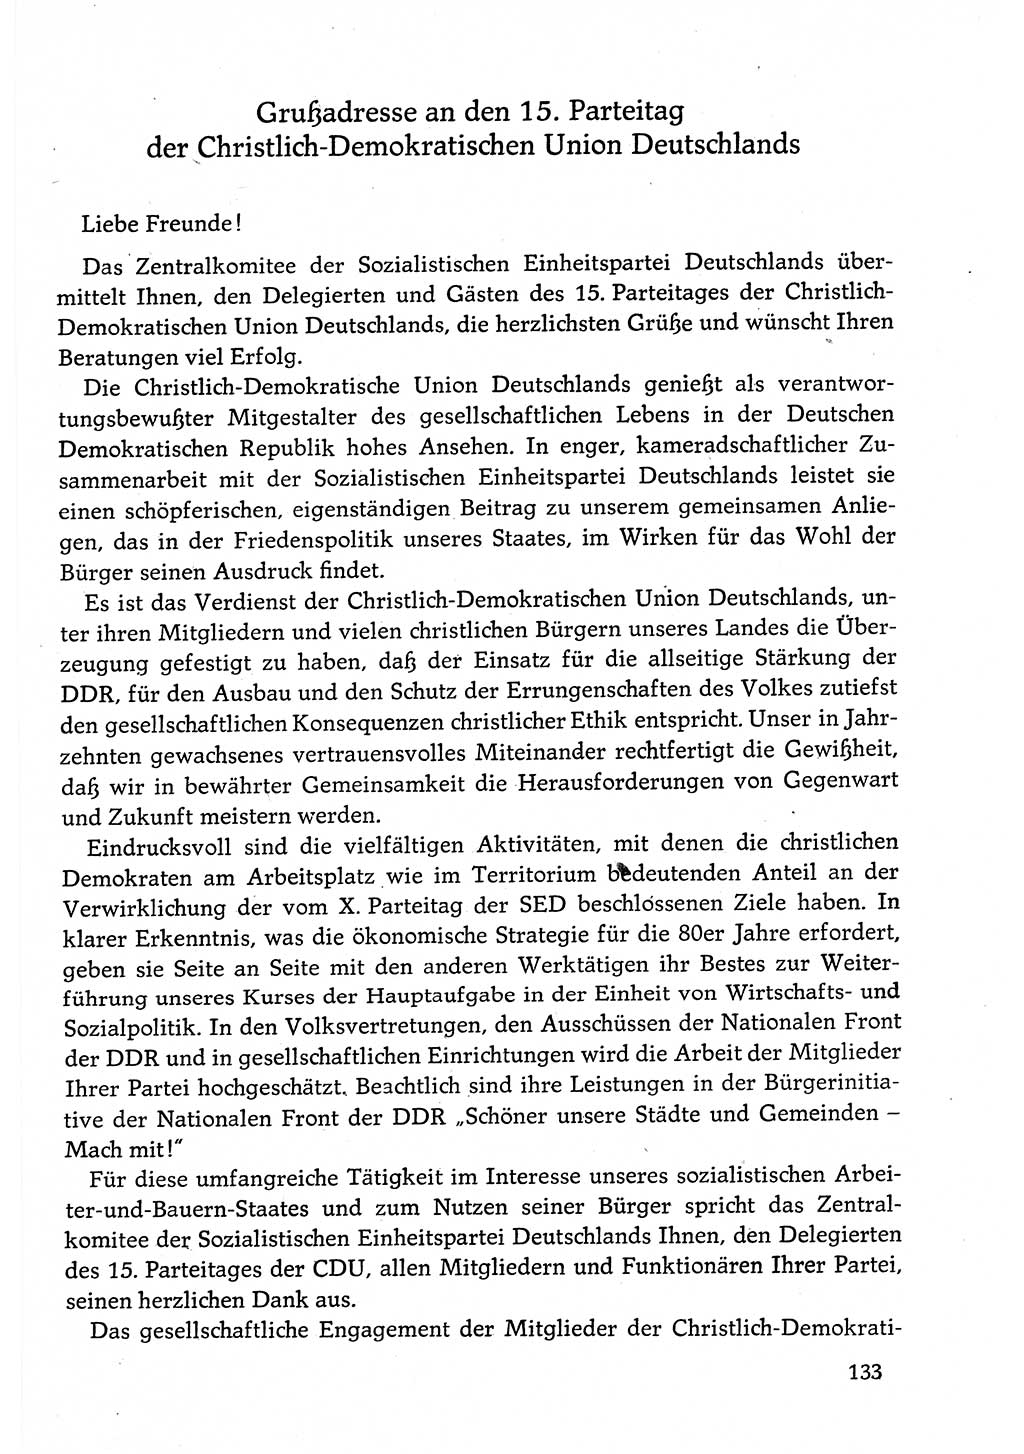 Dokumente der Sozialistischen Einheitspartei Deutschlands (SED) [Deutsche Demokratische Republik (DDR)] 1982-1983, Seite 133 (Dok. SED DDR 1982-1983, S. 133)